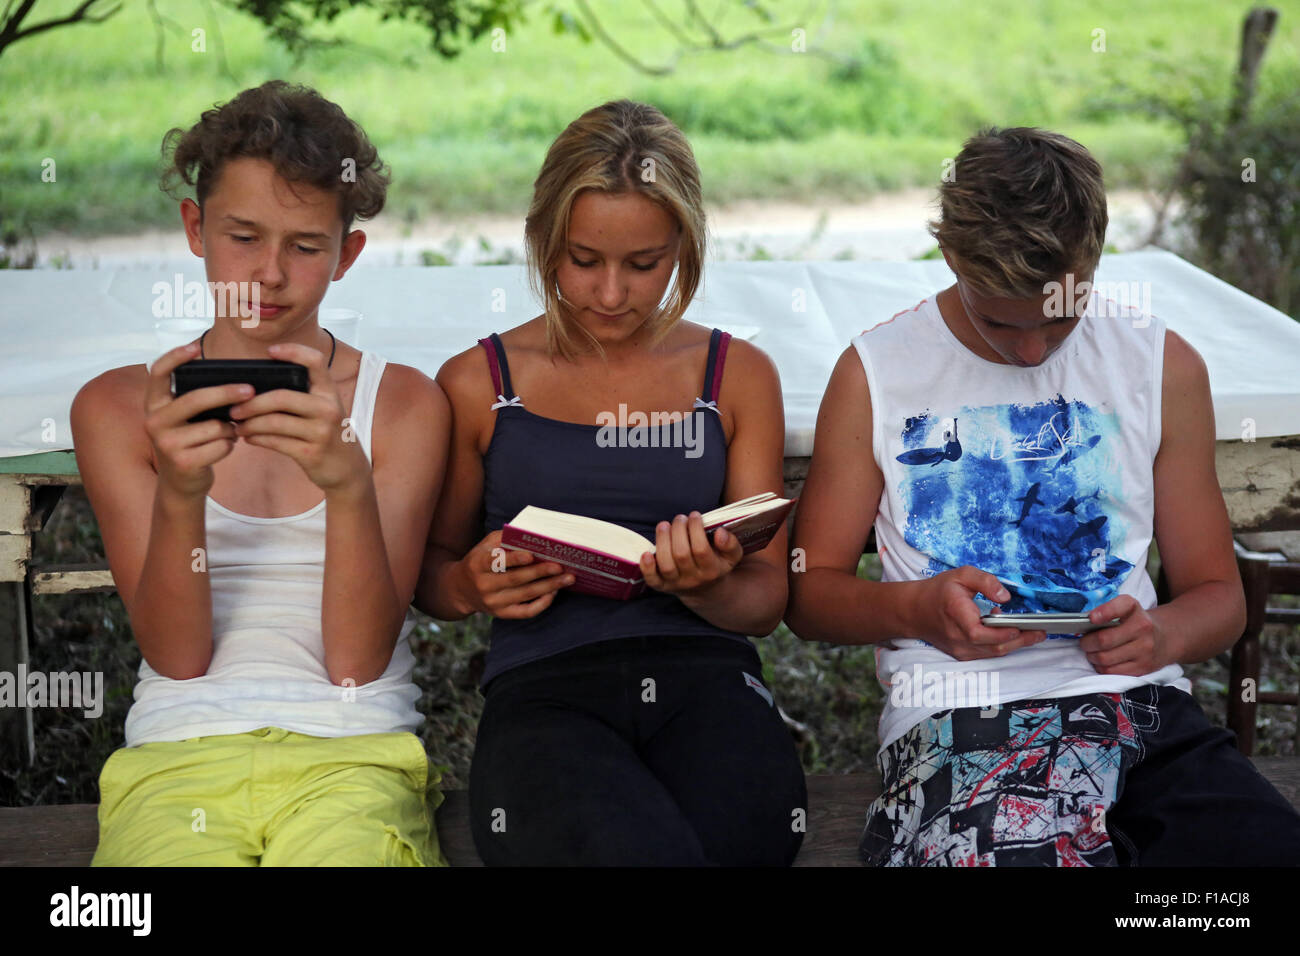 Lago di Bolsena, Italien, spielen die Jungs mit ihren Smartphones während eines Mädchens in einem Buch lesen Stockfoto